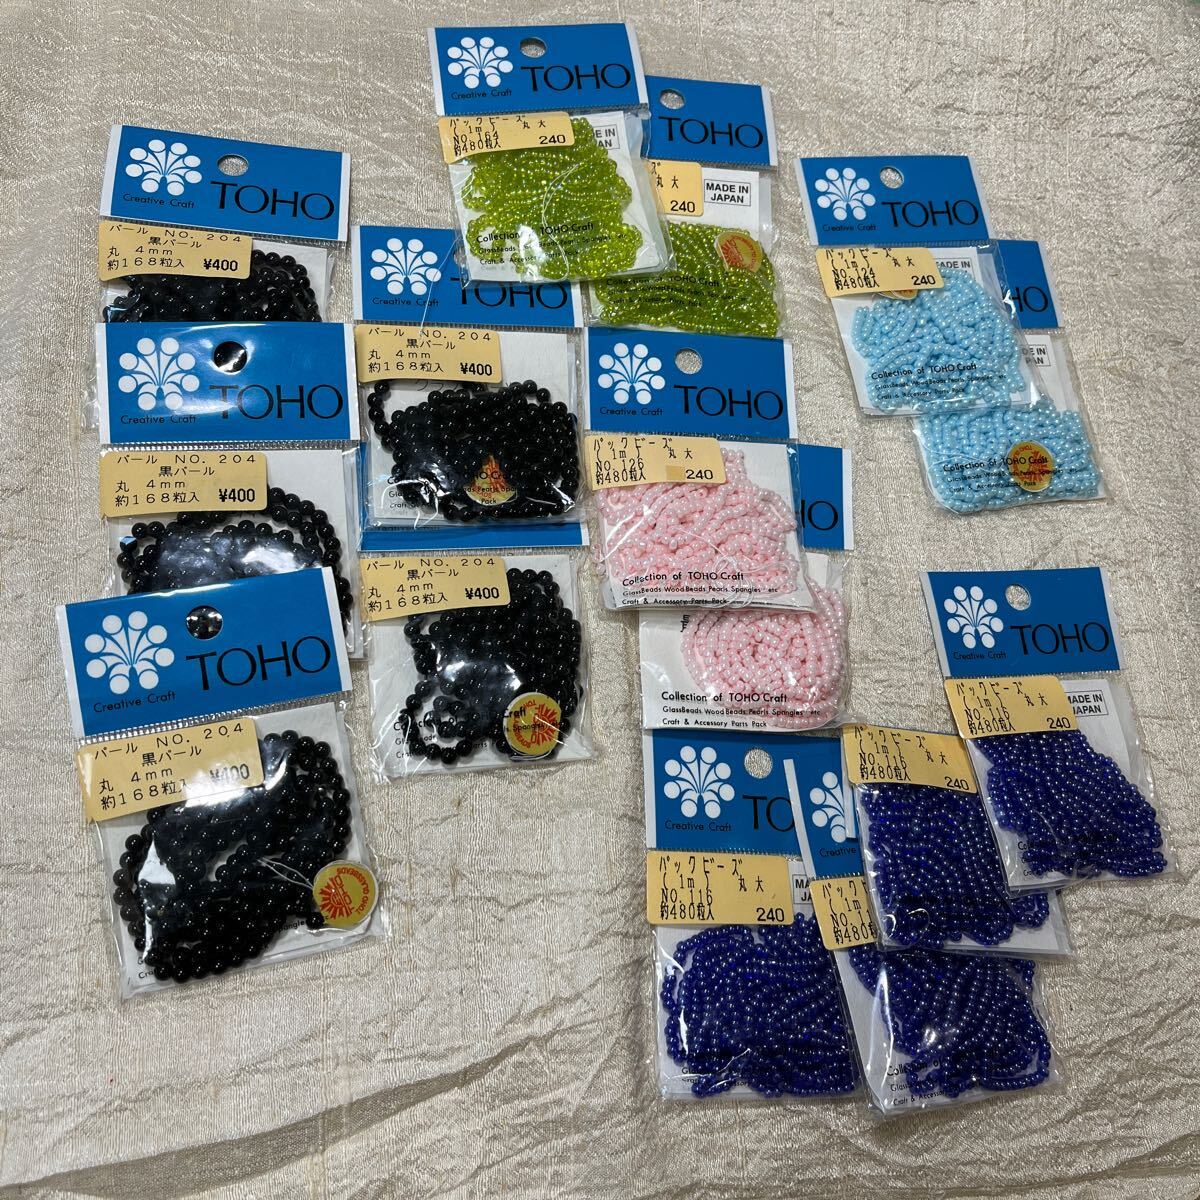 TOHO ビーズ☆黒パール5袋とパックビーズ4色10袋☆送料無料の画像1